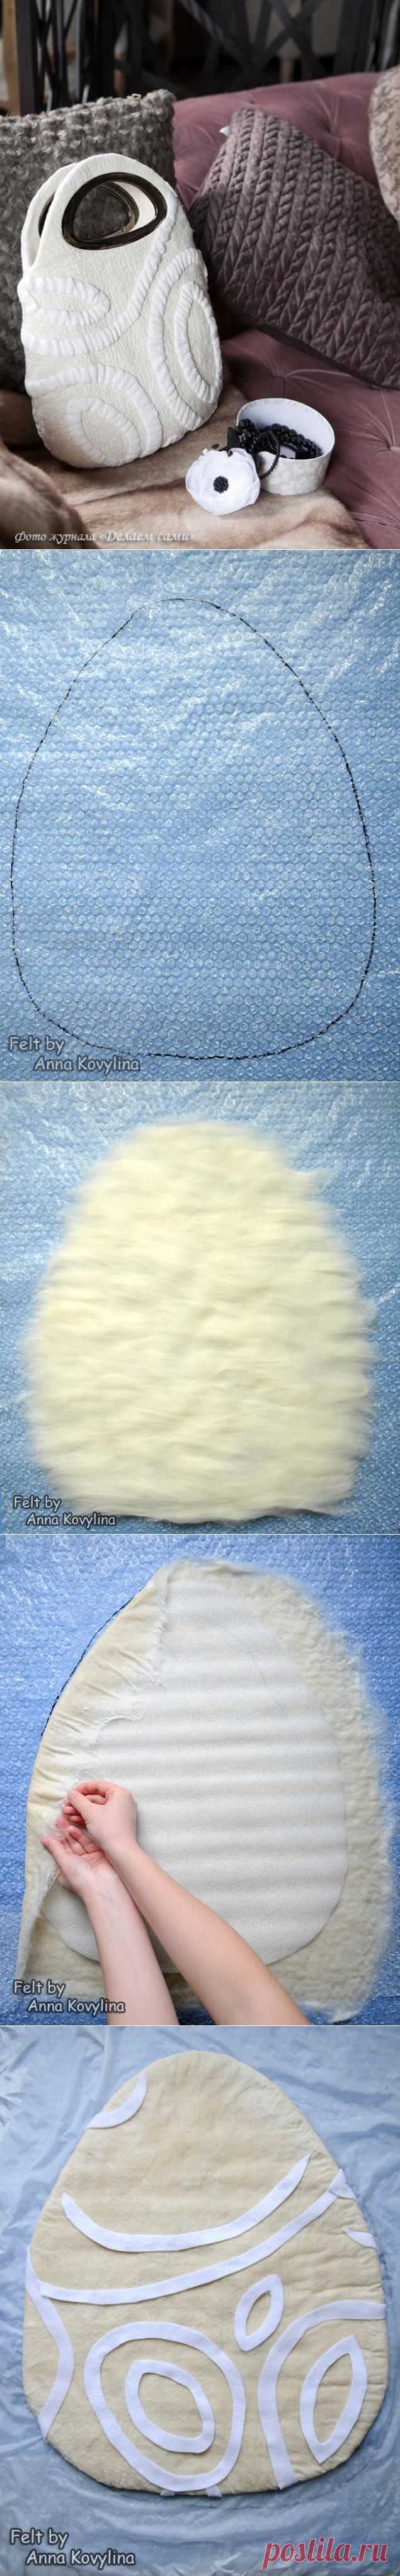 Ламинирование – создание объёмных узоров в войлоке при помощи шерсти и ткани.